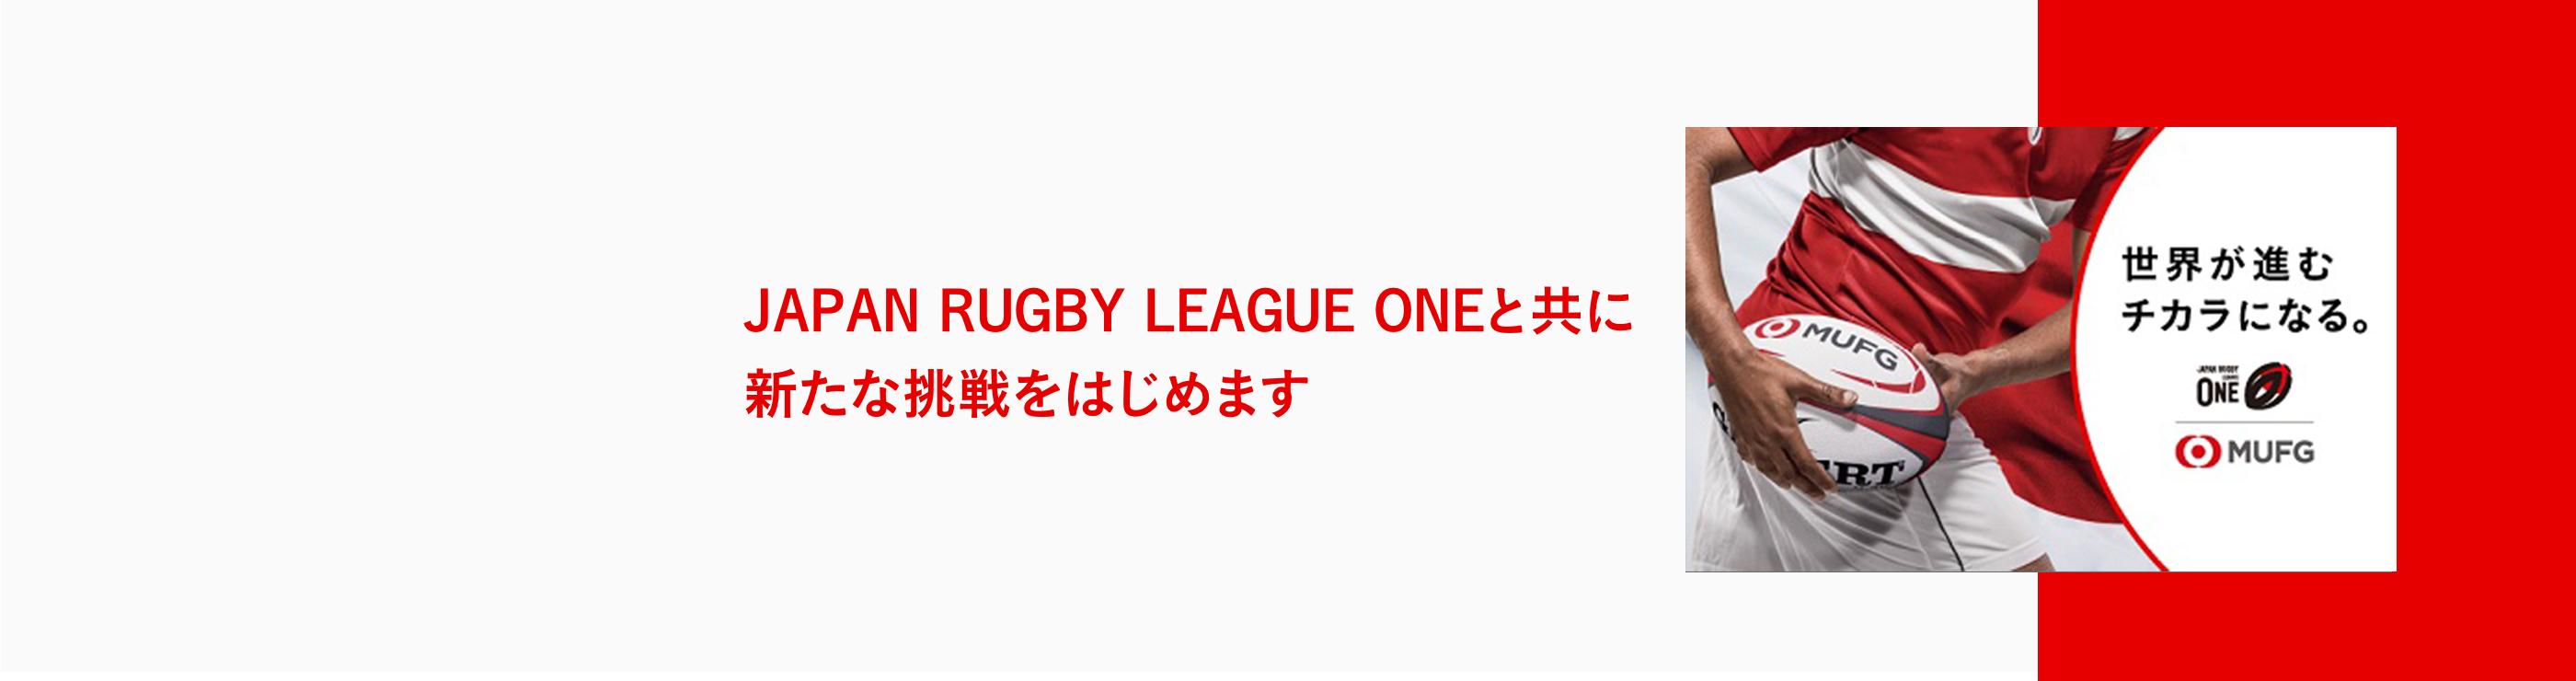 Japan Rugby League Oneとともに新たな挑戦をはじめます　世界が進むチカラになる。MUFG